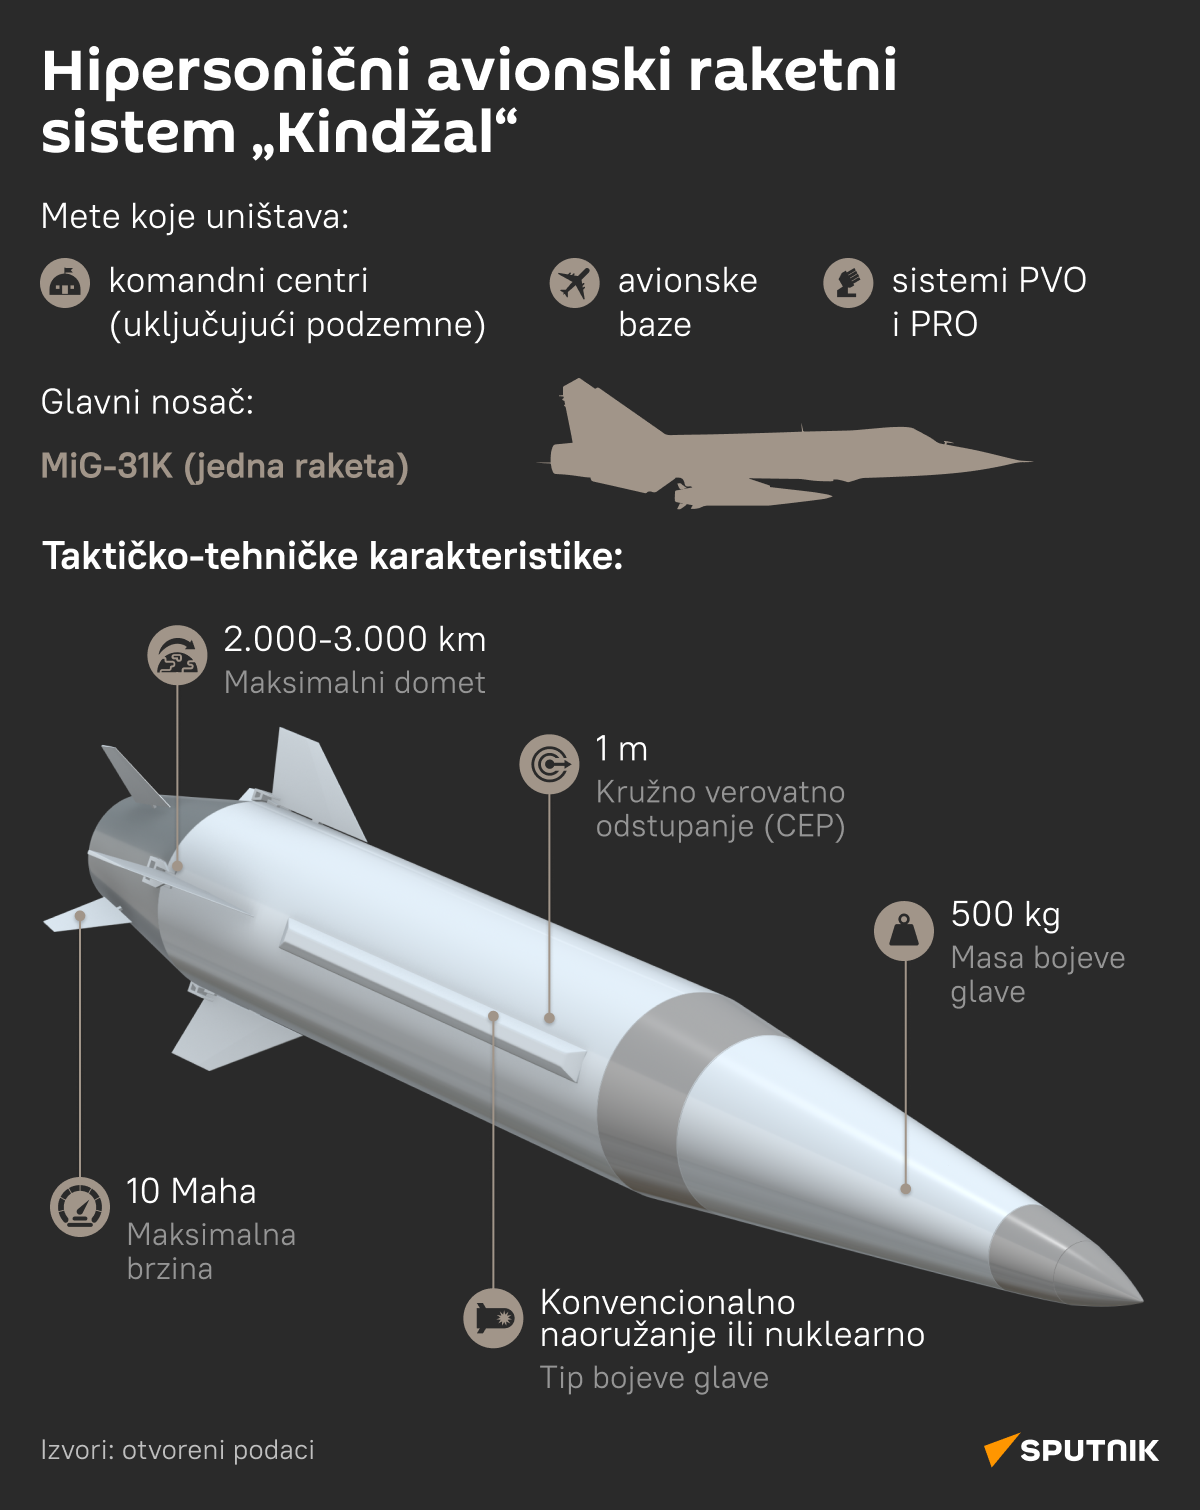 INFOGRAFIKA   raketni sistem Kindžal LAT desk - Sputnik Srbija